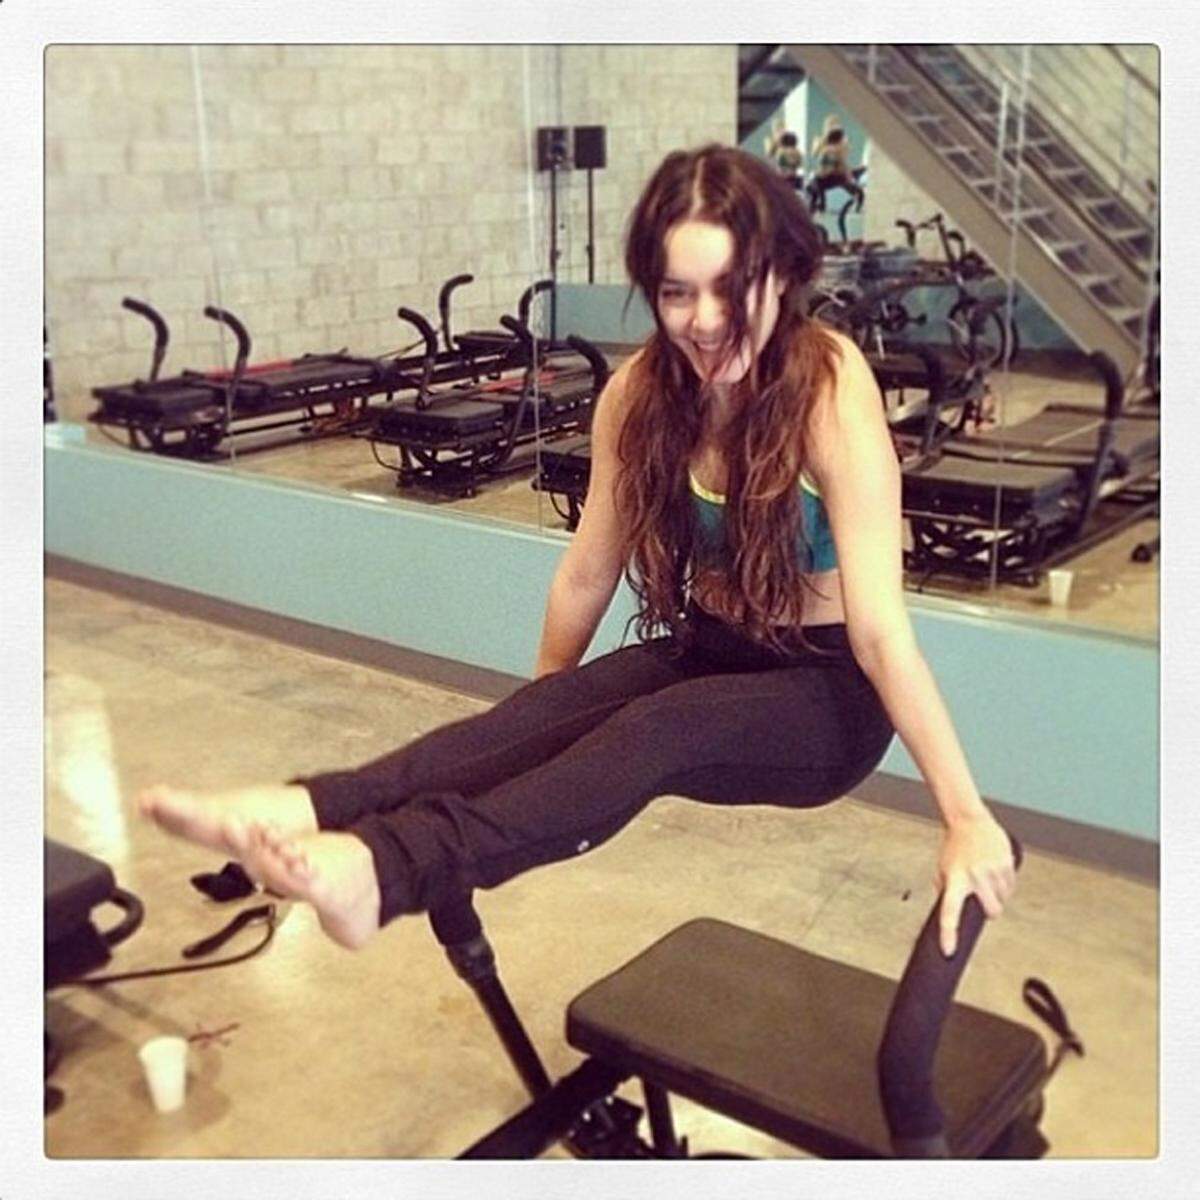 Schauspielerin Vanessa Hudgens setzt auf Übungen mit dem eigenen Körpergewicht.